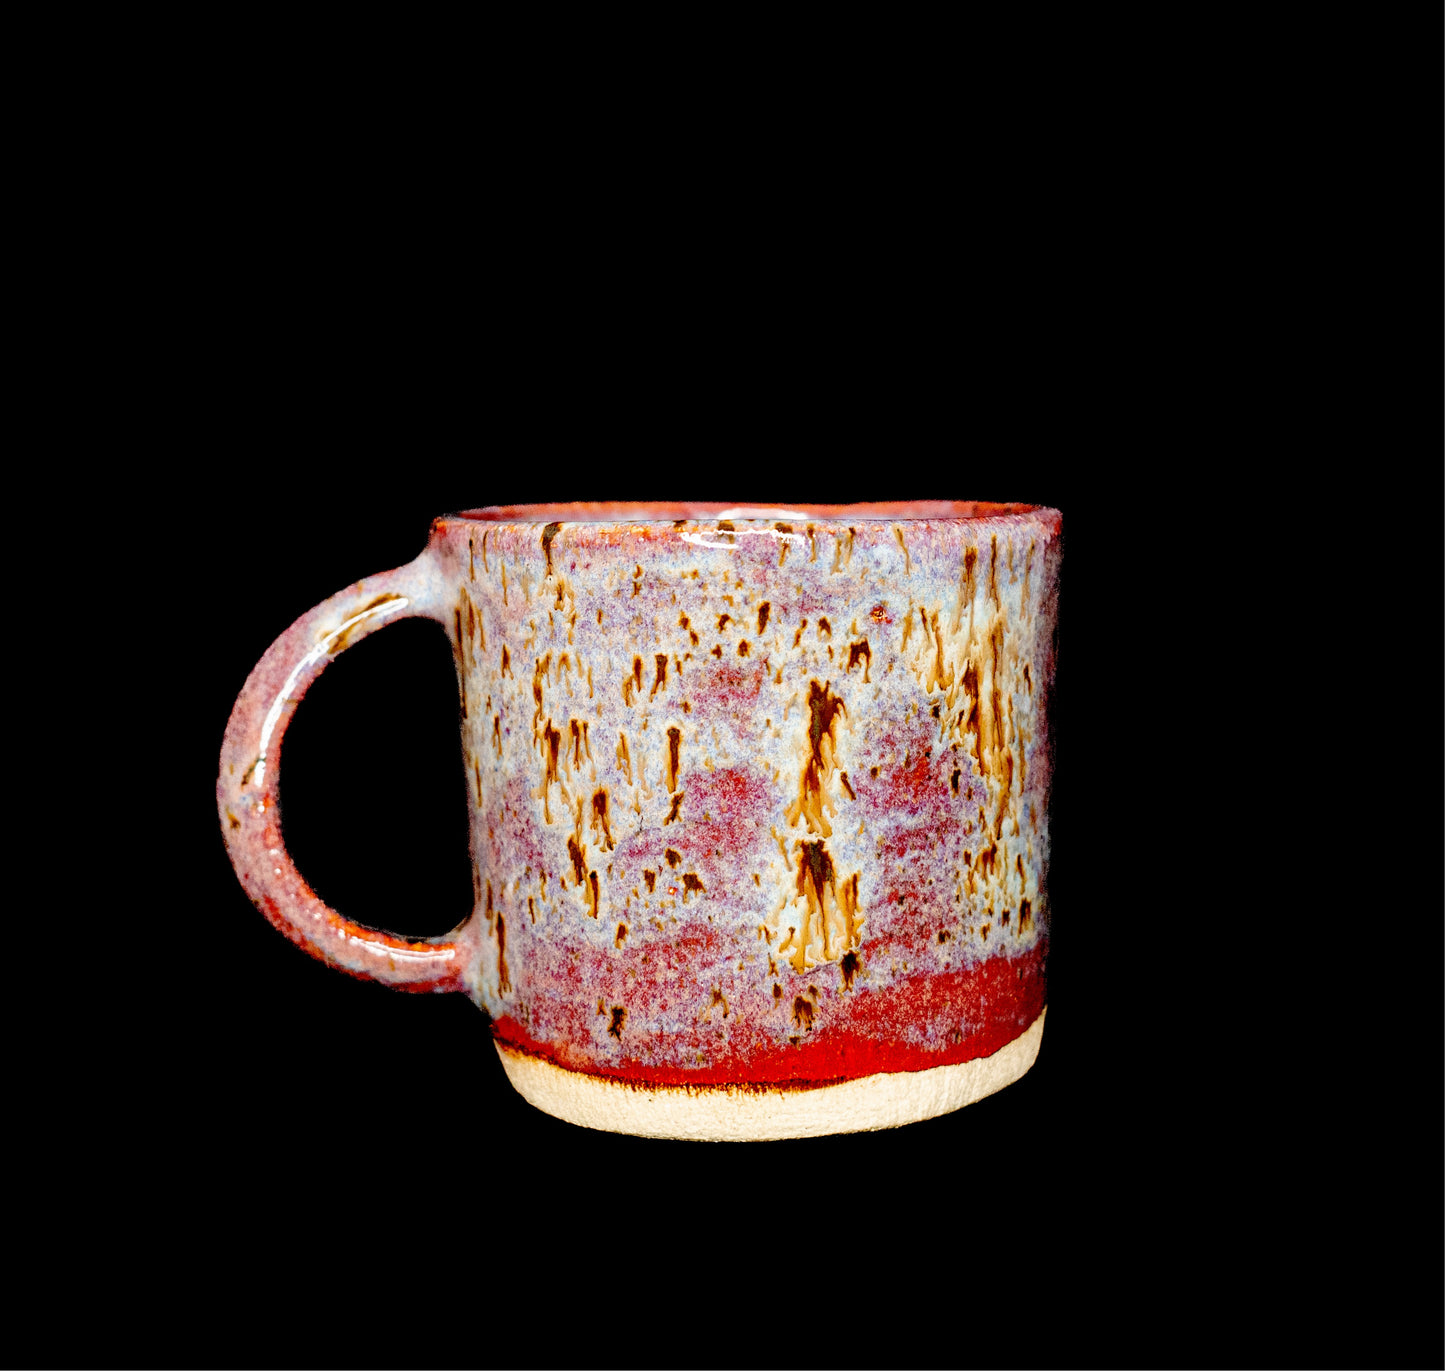 Big & Fully Glazed Coffee Mug#002